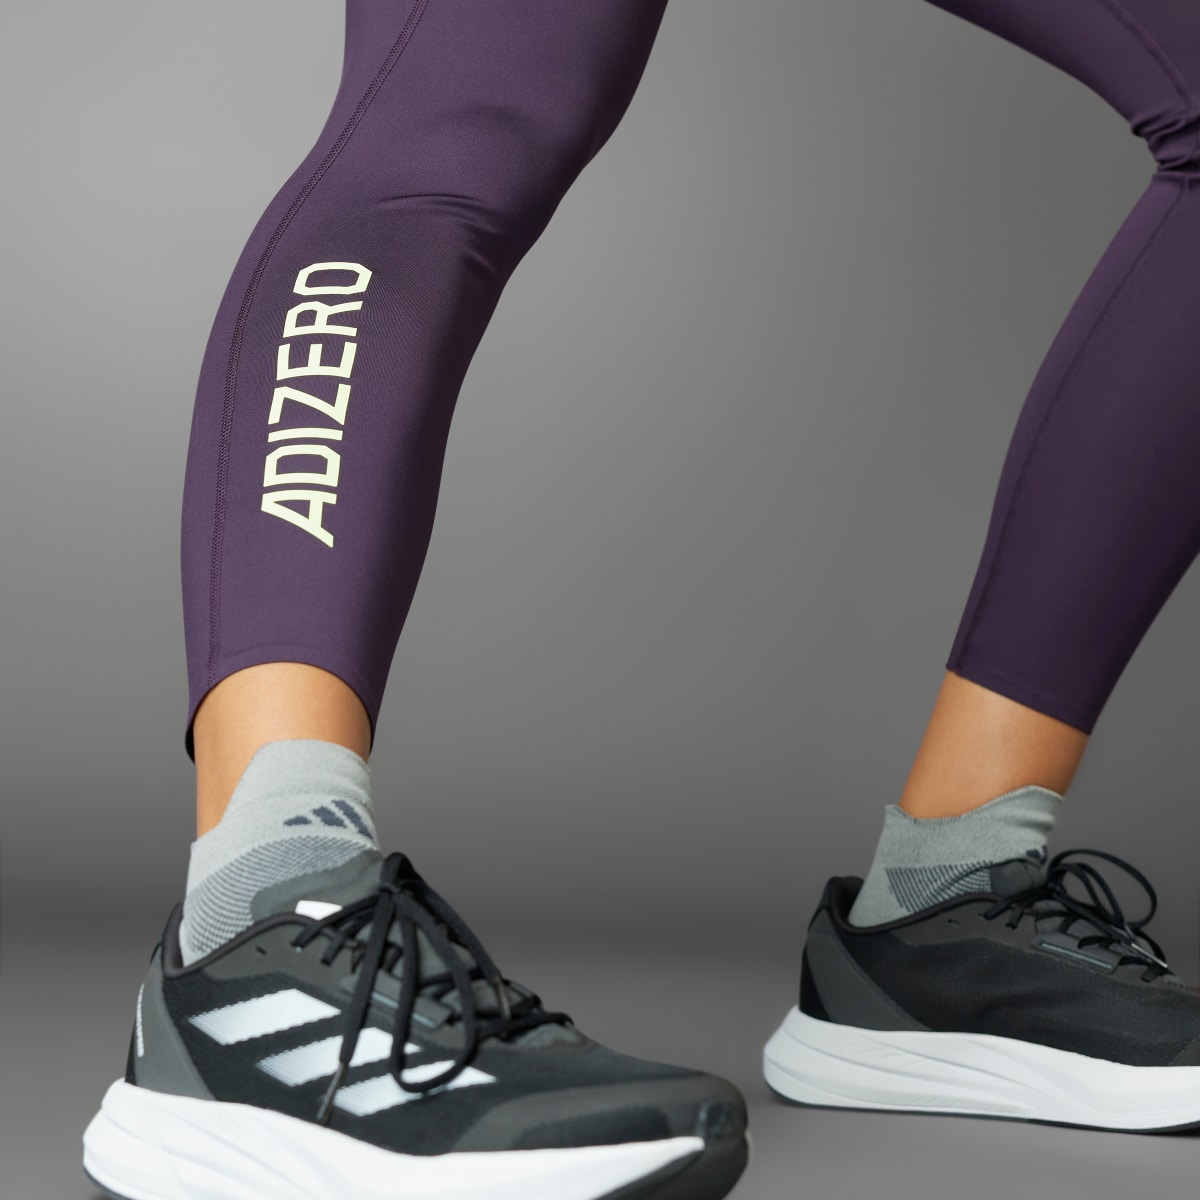 Adidas Adizero 7/8 Leggings. 5